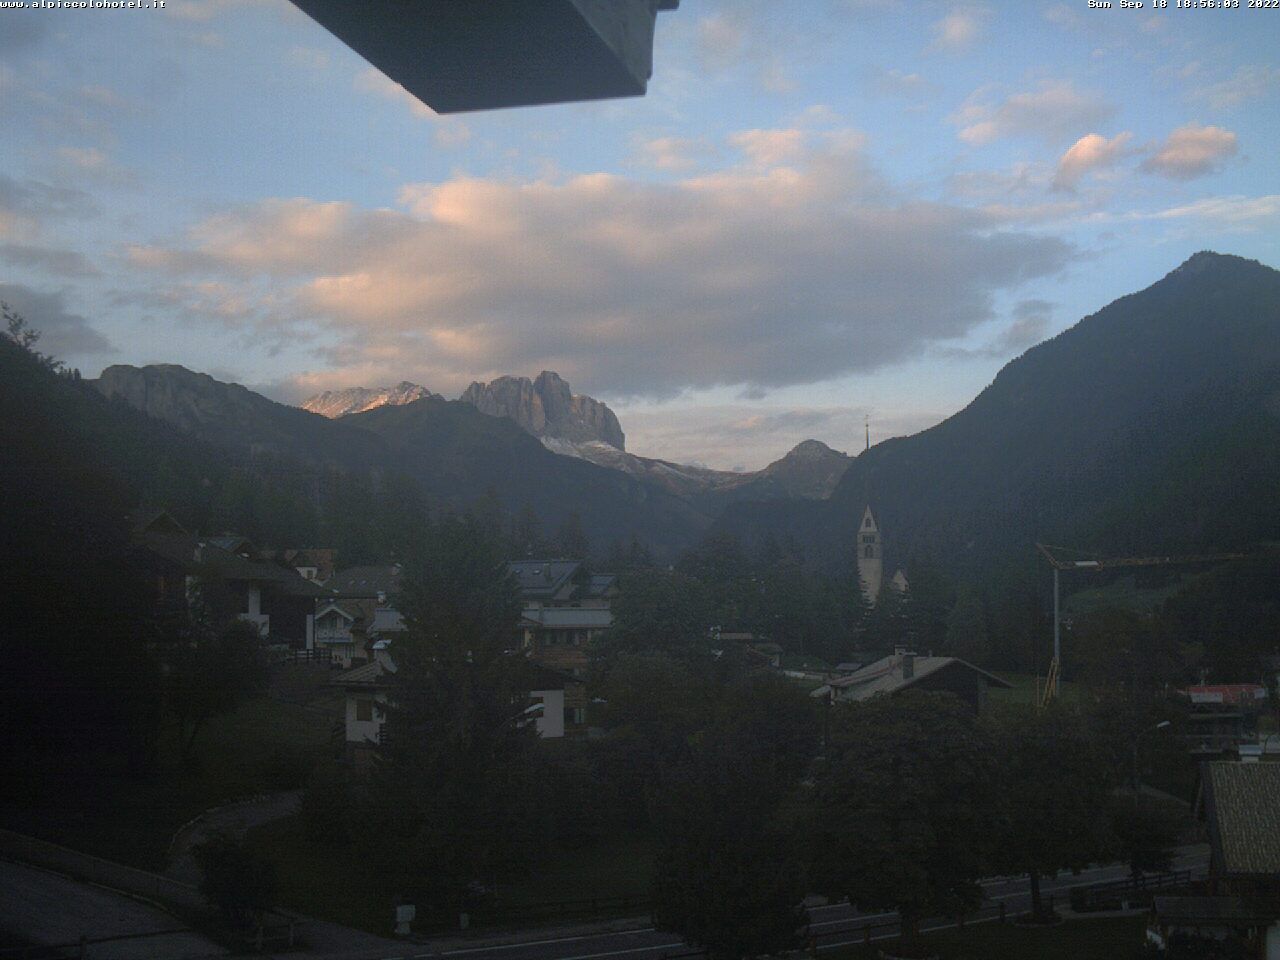 webcam Vigo di Fassa, nel comune di San Giovanni di Fassa, webcam provincia di Trento, 
                                            webcam Trentino-Alto Adige, webcam alpi